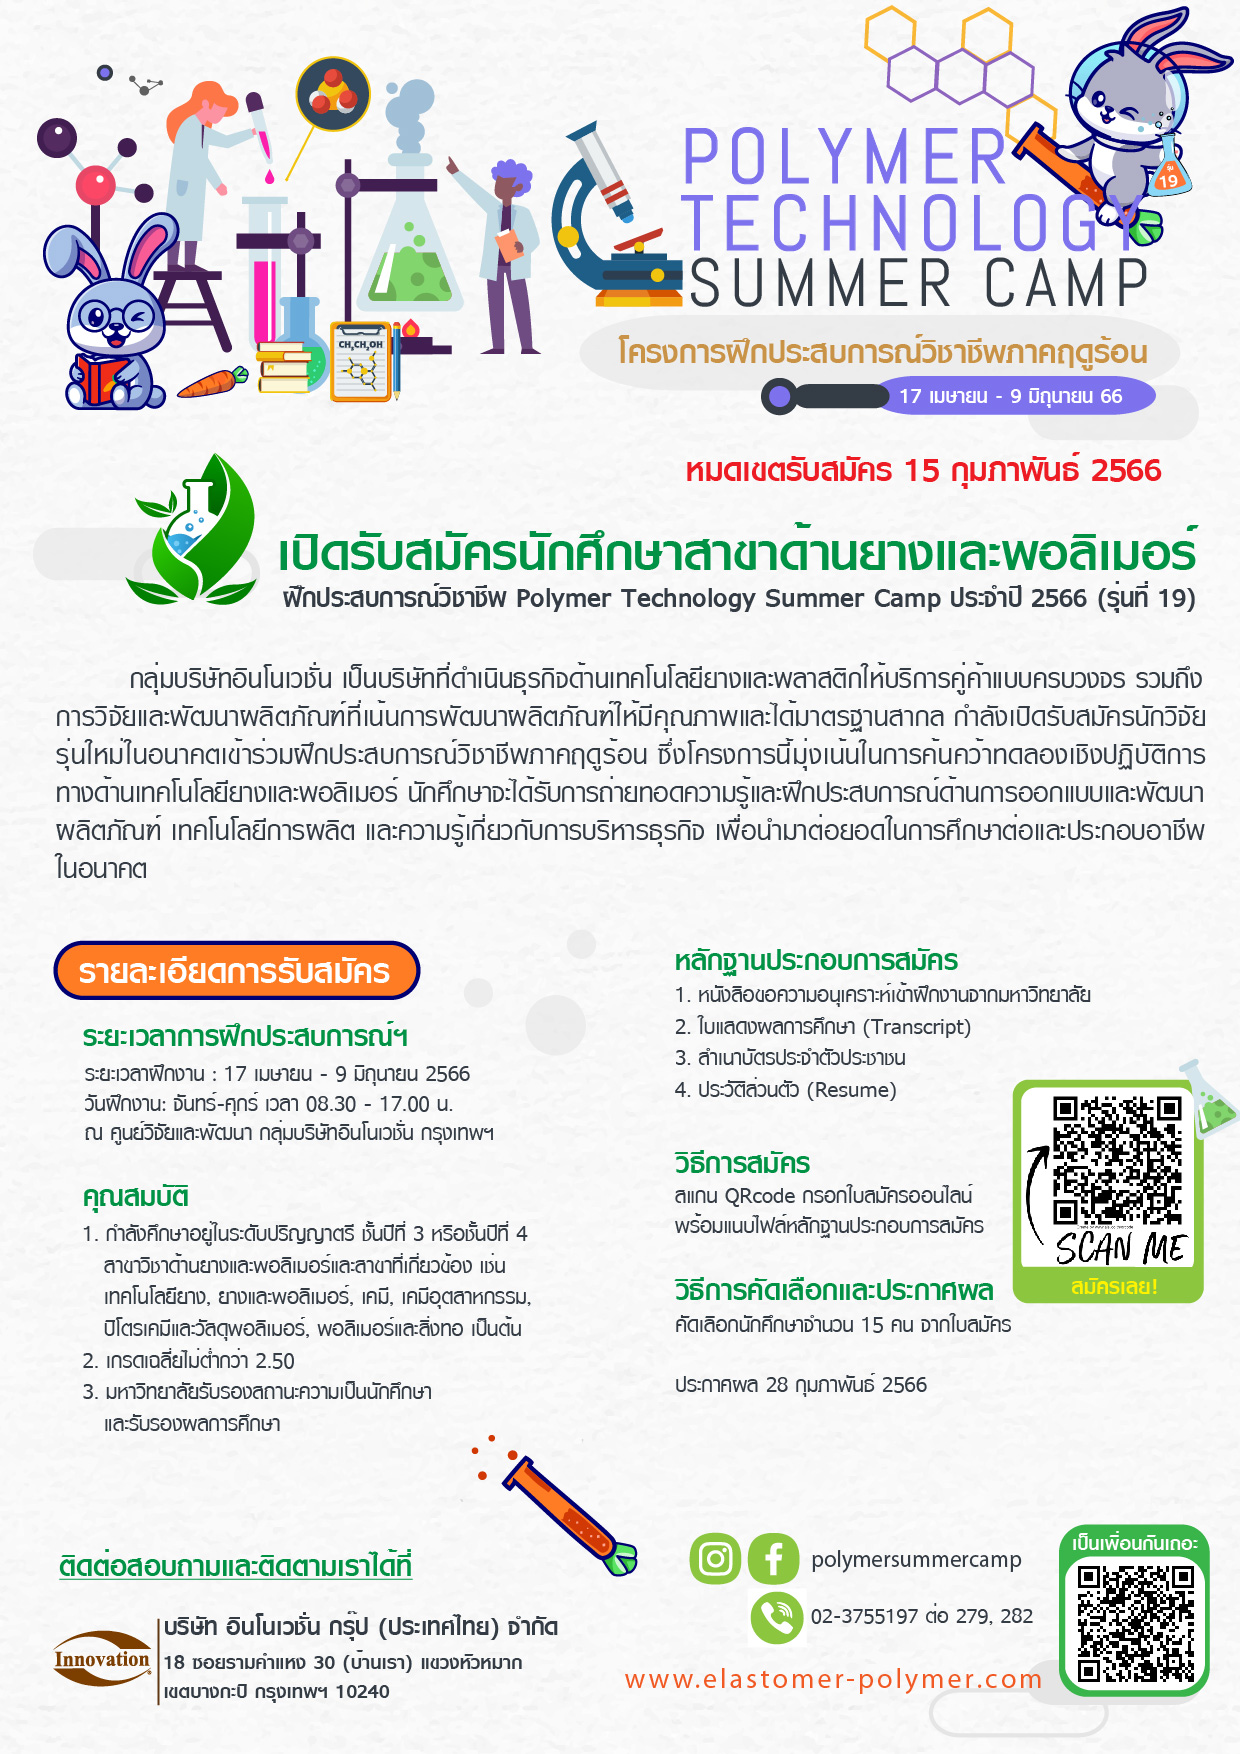 เปิดรับสมัครนักศึกษาสาขาด้านยางและโพลิเมอร์ฝึกประสบการณ์วิชาชีพ Polymer Technology Summer Camp ประจำปี 2566 (รุ่น19)